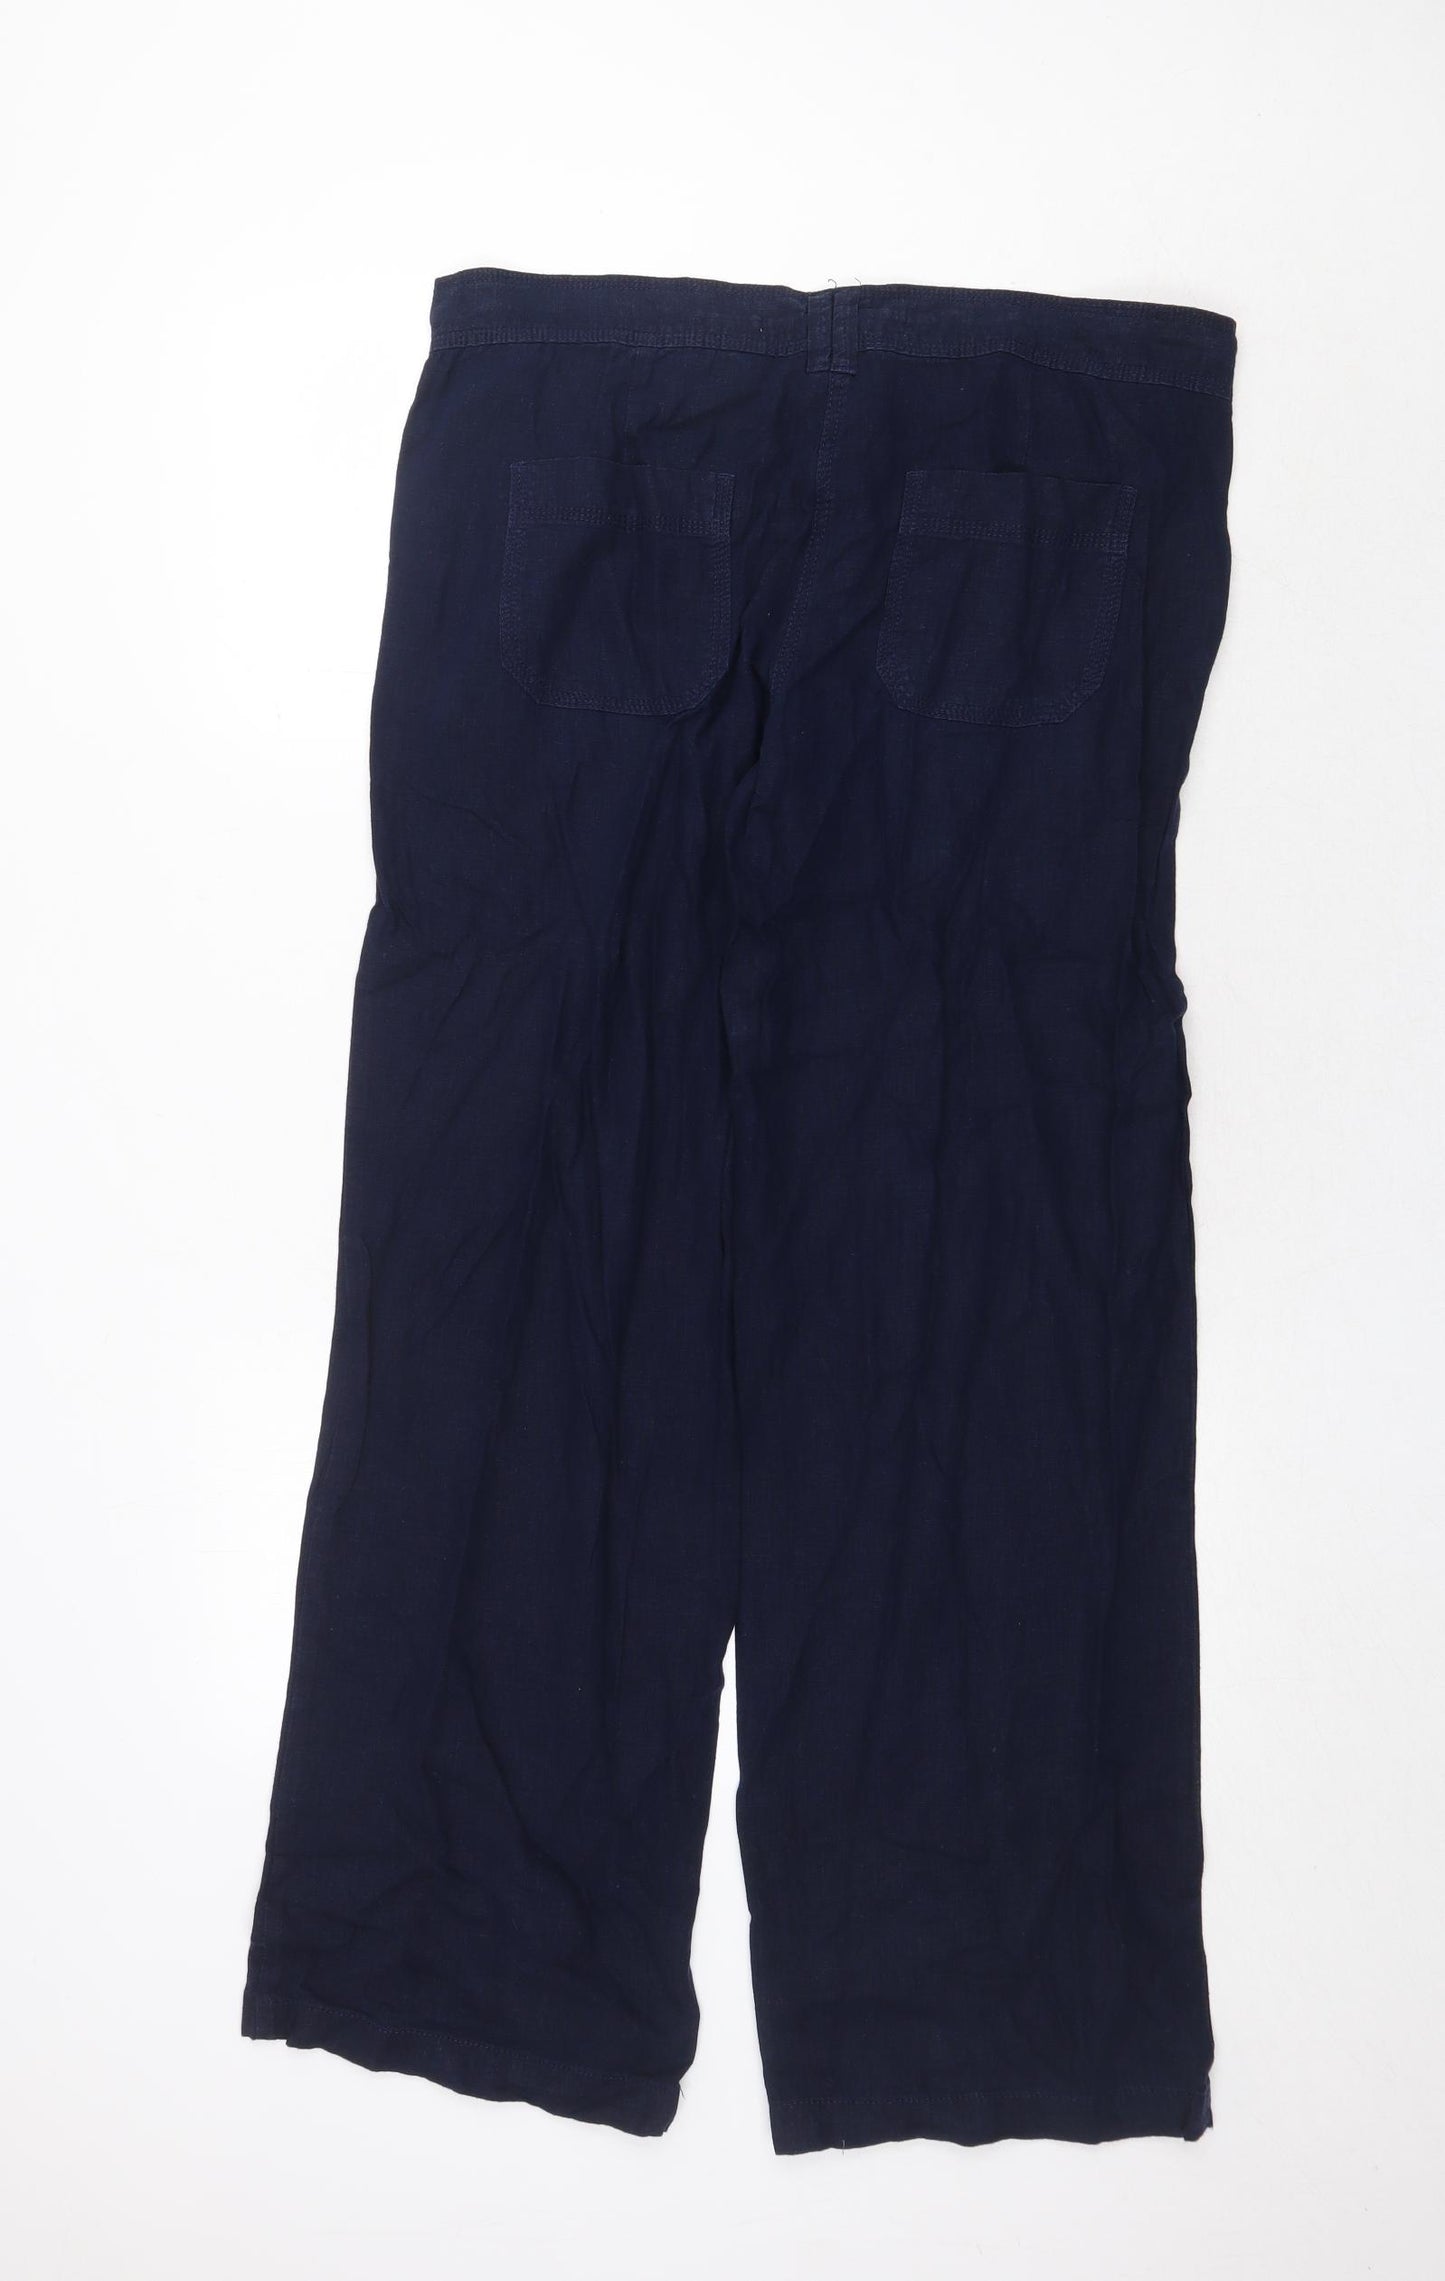 NEXT Womens Blue Linen Trousers Size 14 Regular Zip